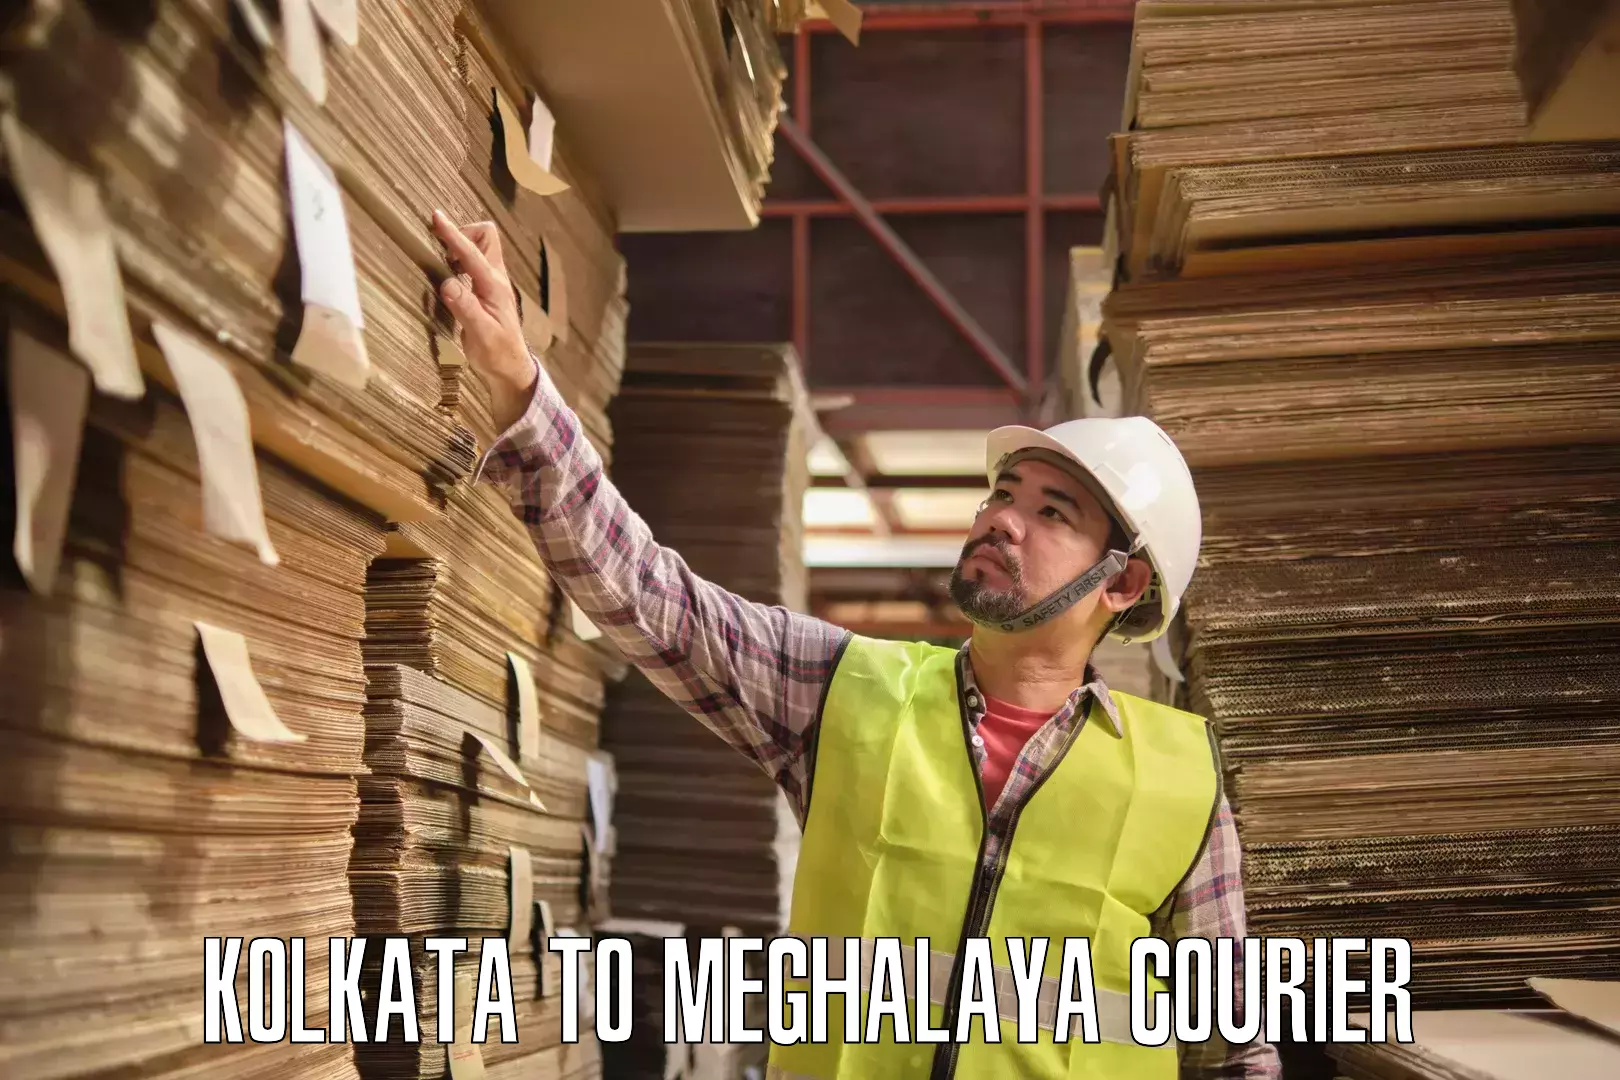 Commercial shipping rates Kolkata to Meghalaya